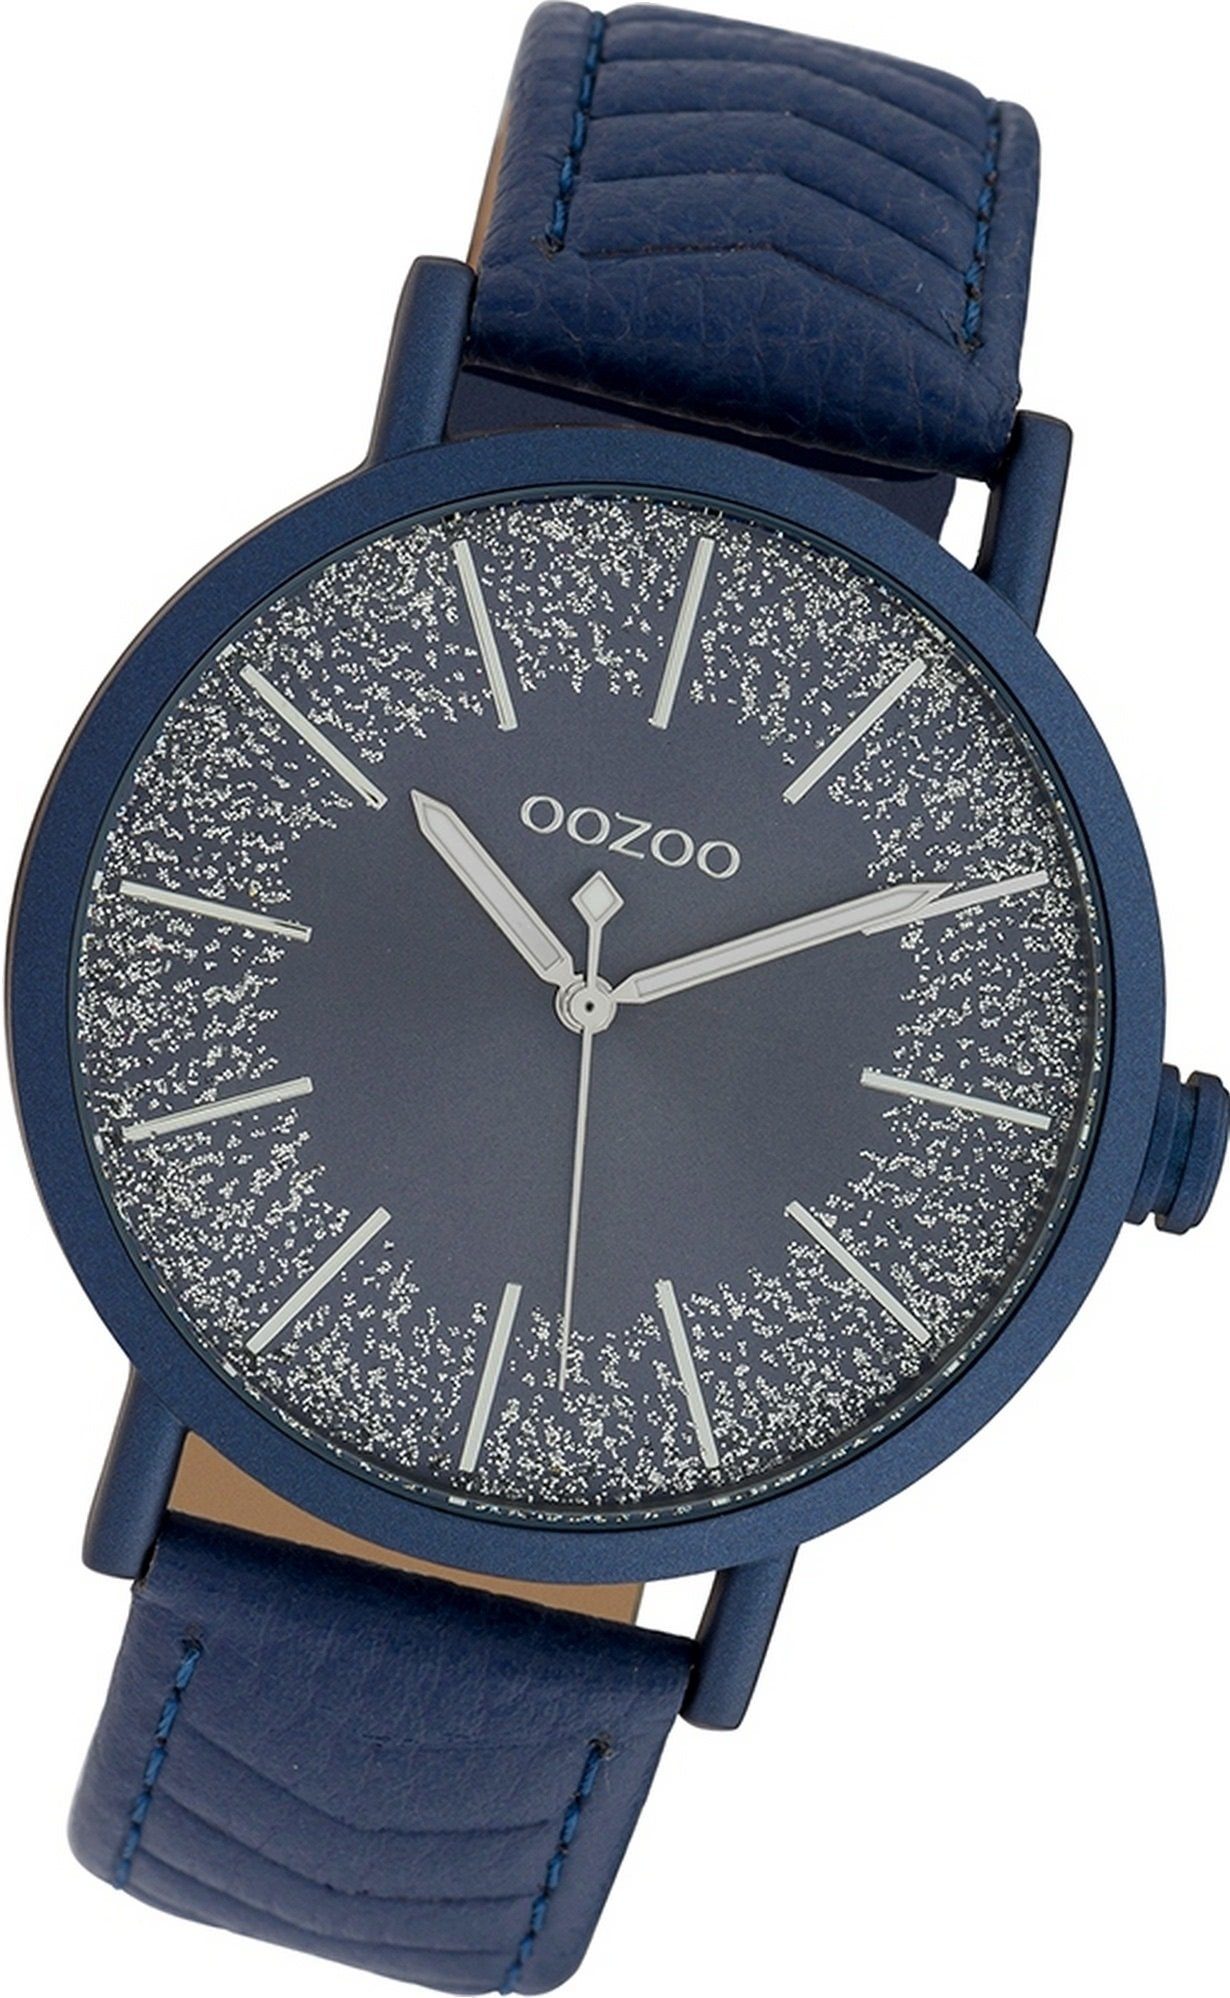 OOZOO Quarzuhr Oozoo Leder groß Analog, Damenuhr Damen dunkelblau, C10147 (ca. 42mm) rundes Lederarmband Uhr Gehäuse